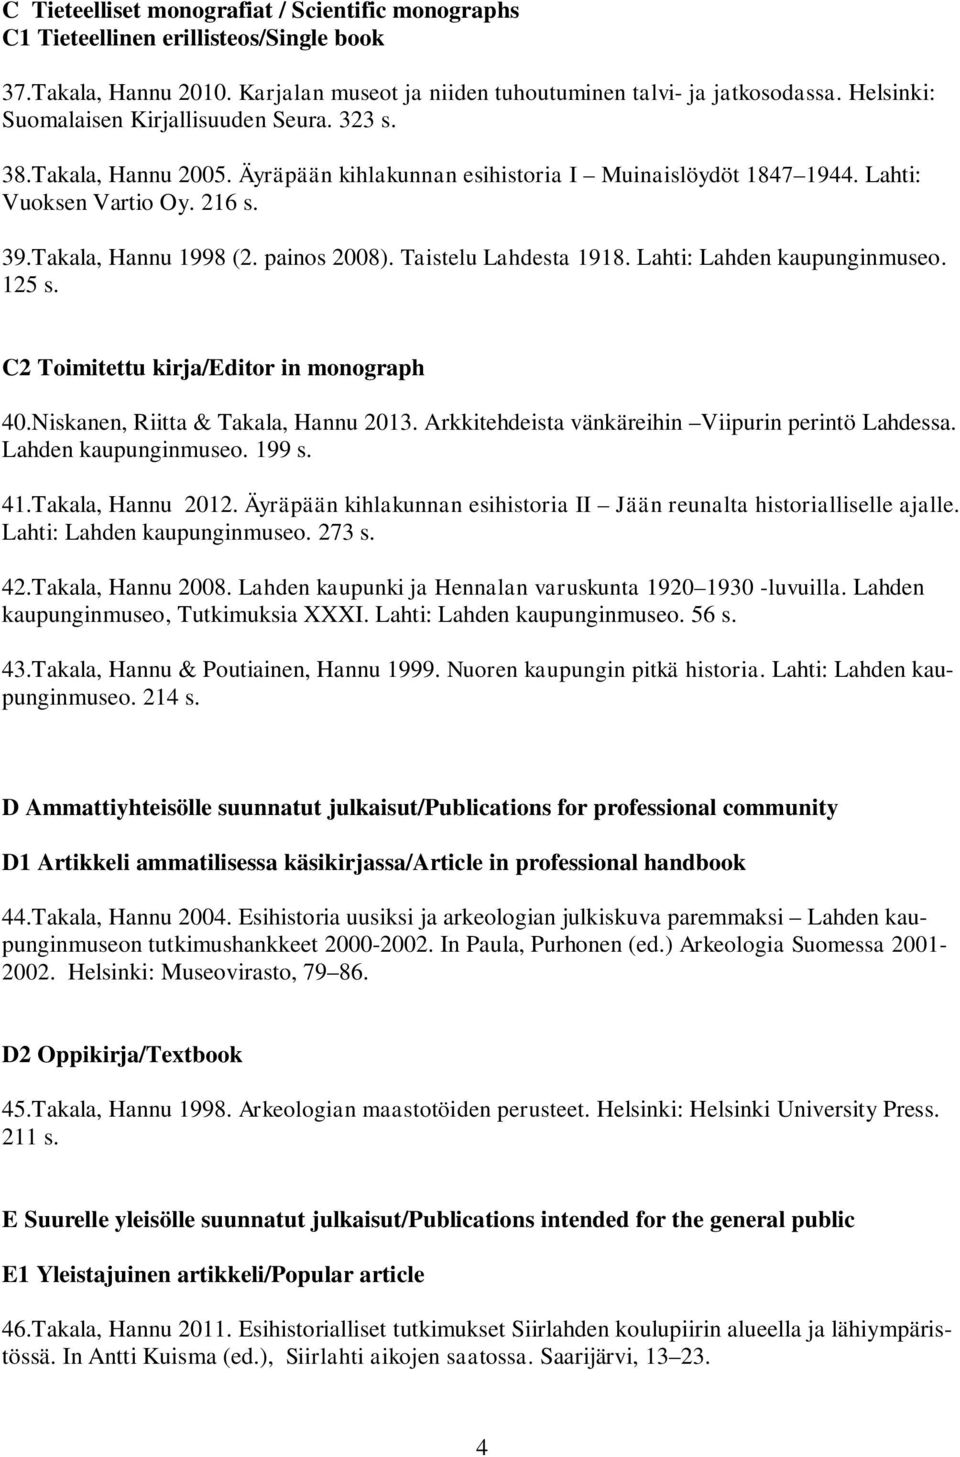 painos 2008). Taistelu Lahdesta 1918. Lahti: Lahden kaupunginmuseo. 125 s. C2 Toimitettu kirja/editor in monograph 40.Niskanen, Riitta & Takala, Hannu 2013.